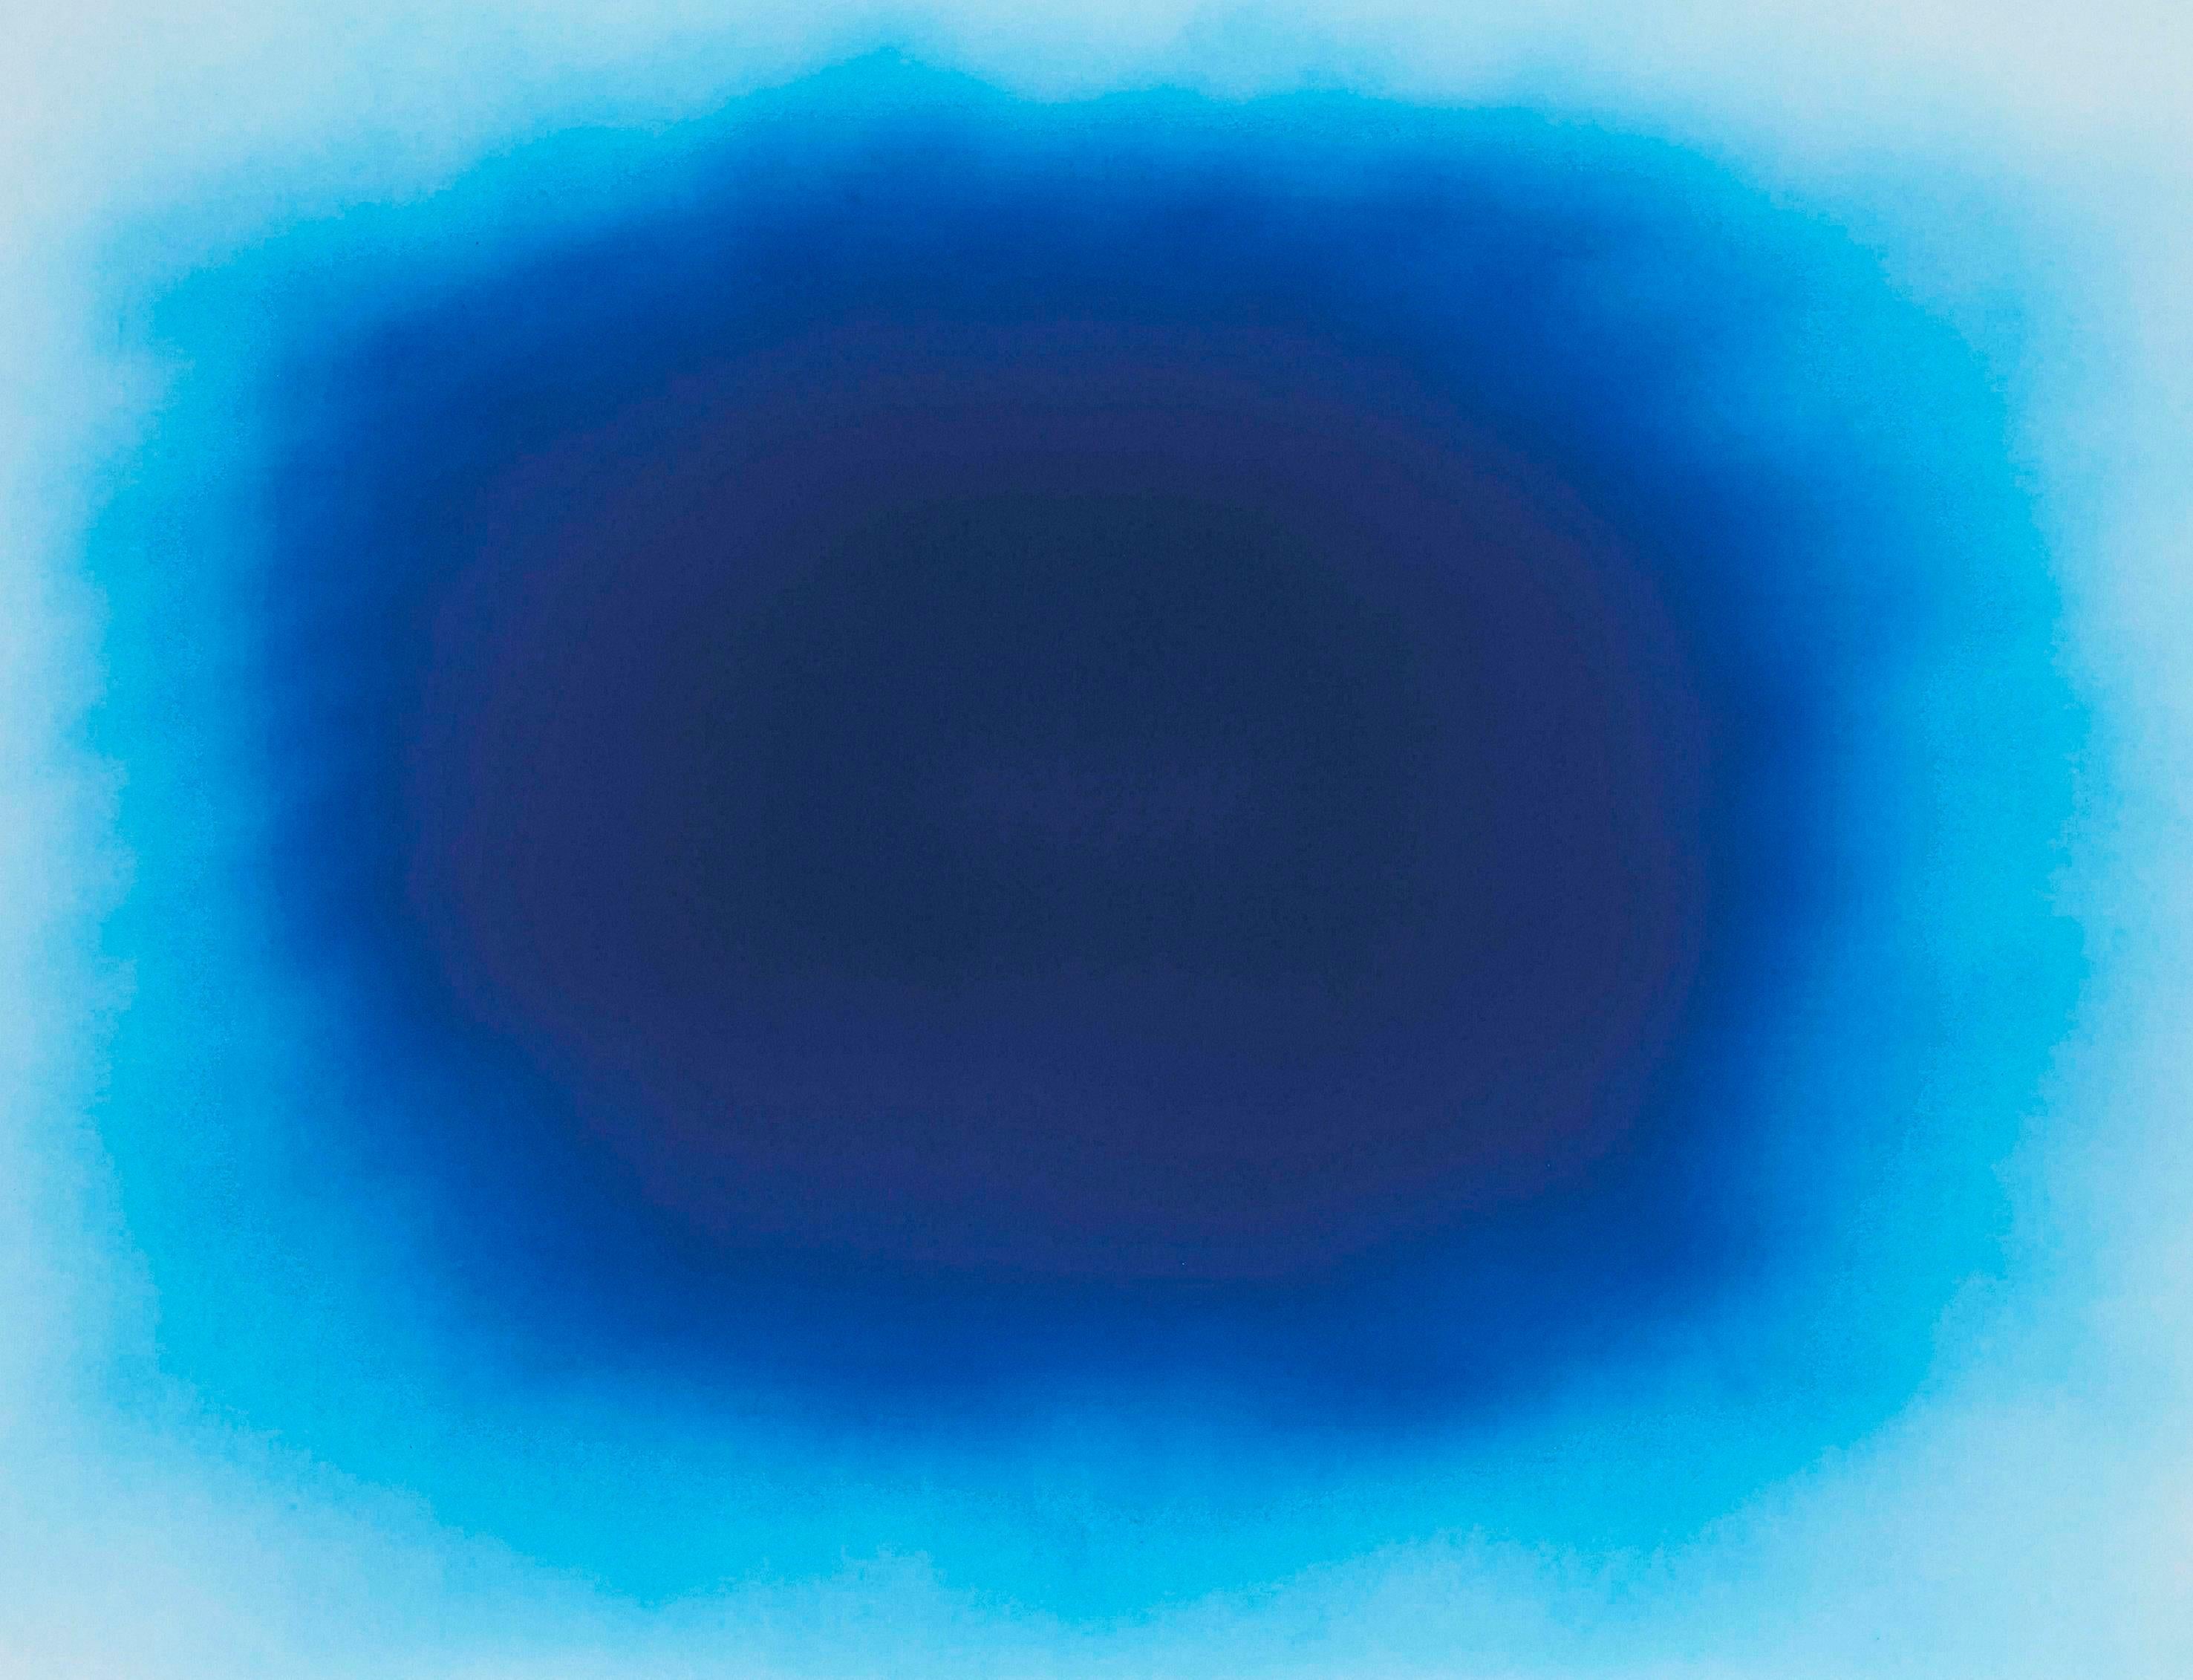 Atmendes Blau (Zeitgenössisch), Print, von Anish Kapoor